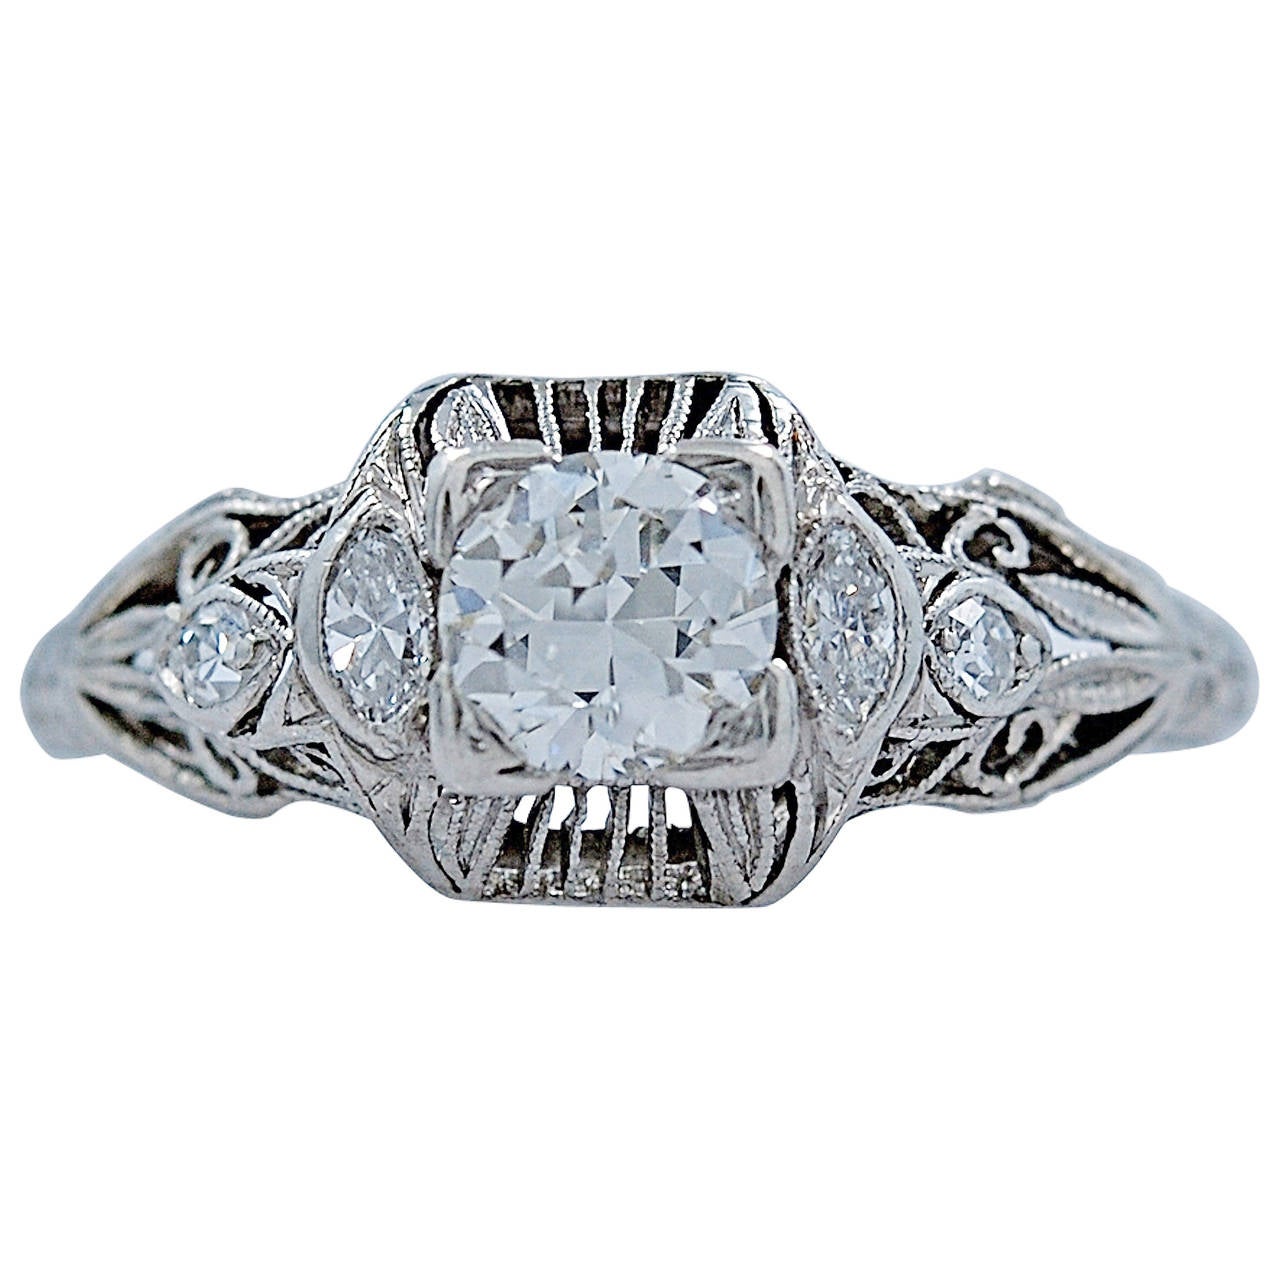 Outstanding Art Deco/Art Nouveau .50ct. Diamond & Platinum Engagement Ring